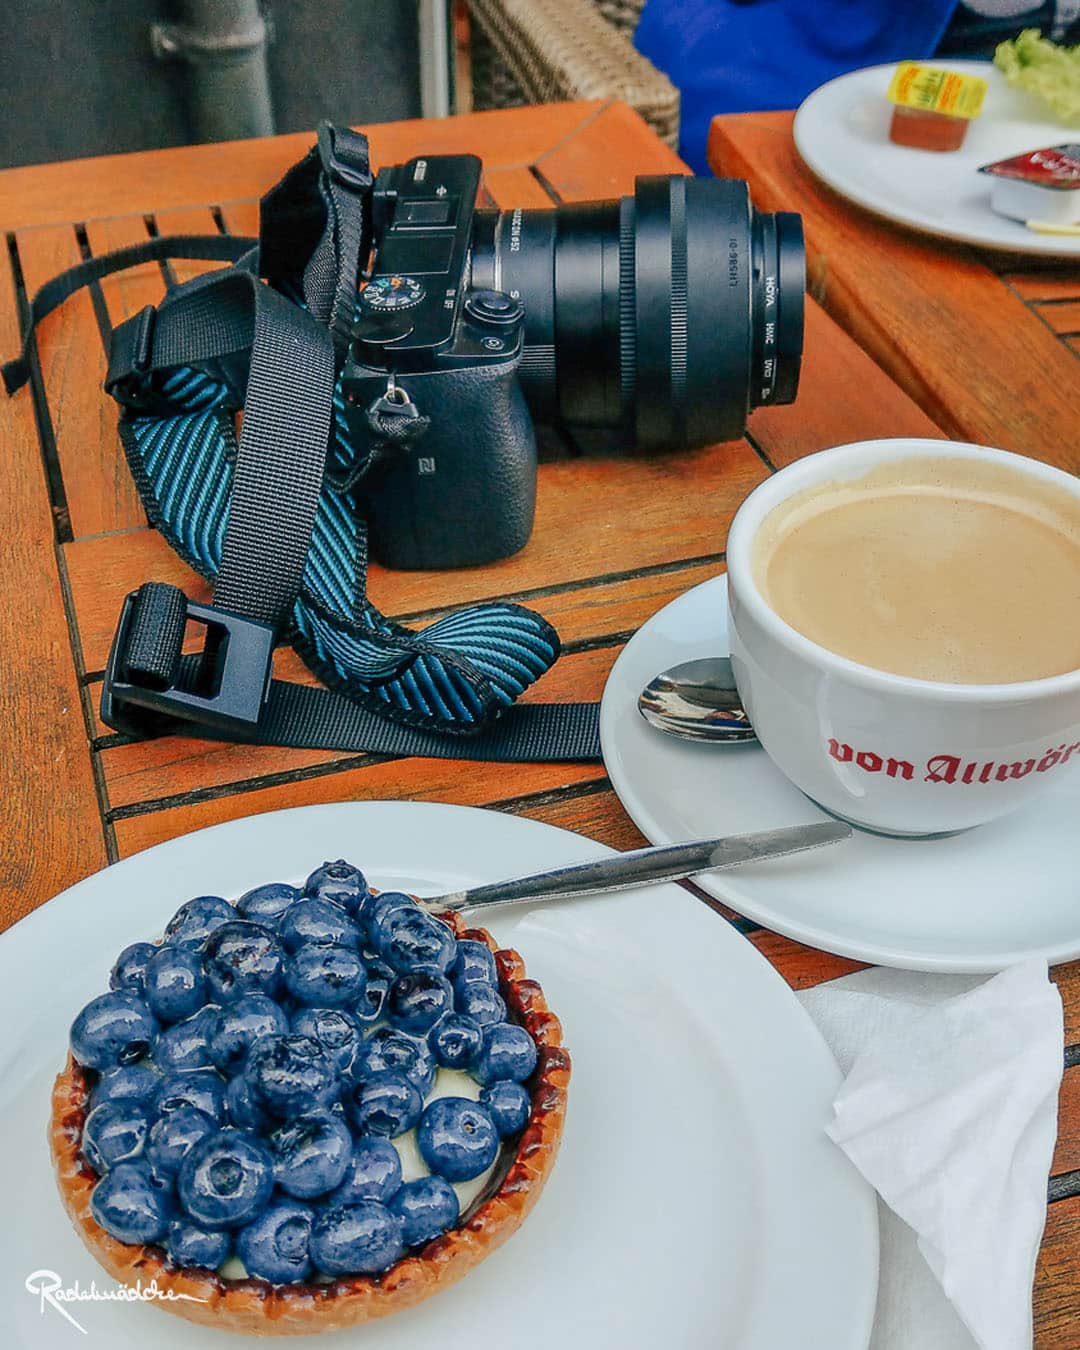 Tisch mit Blaubeertörtchen, Kaffee und Kamera